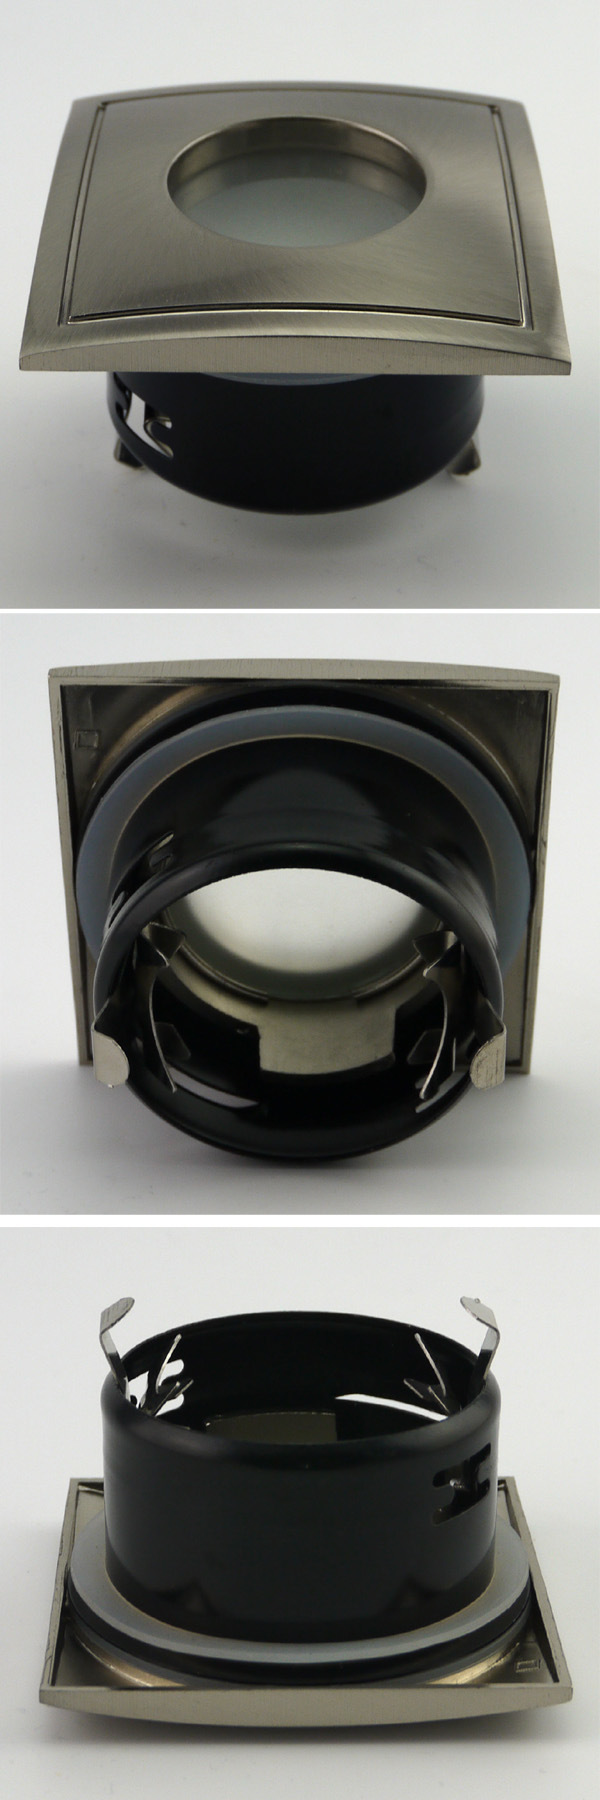 Aluminum Die Casting GU10 MR16 Square Fixed Recessed LED Bathroom Downlight (LT1901)